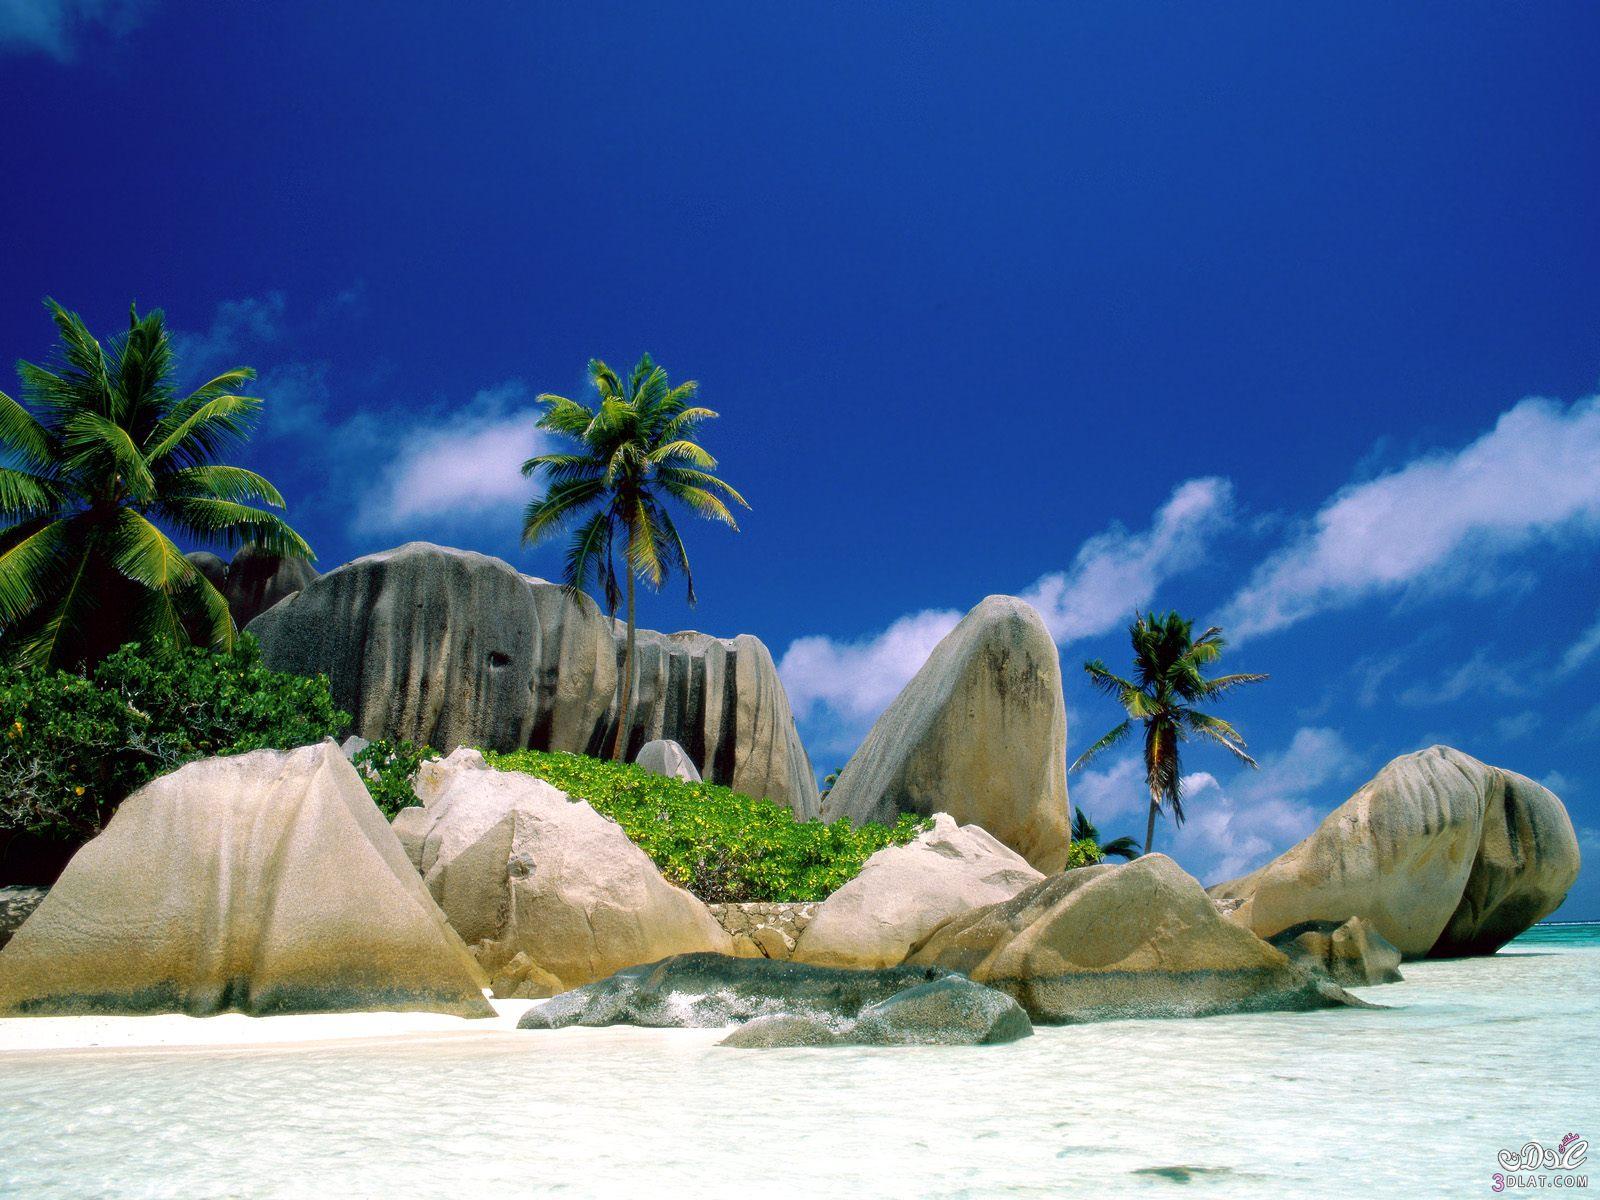 أجمل و اشهر 10 جزر سياحية على مستوى العالم >>> كسبان ولا خسران >>>